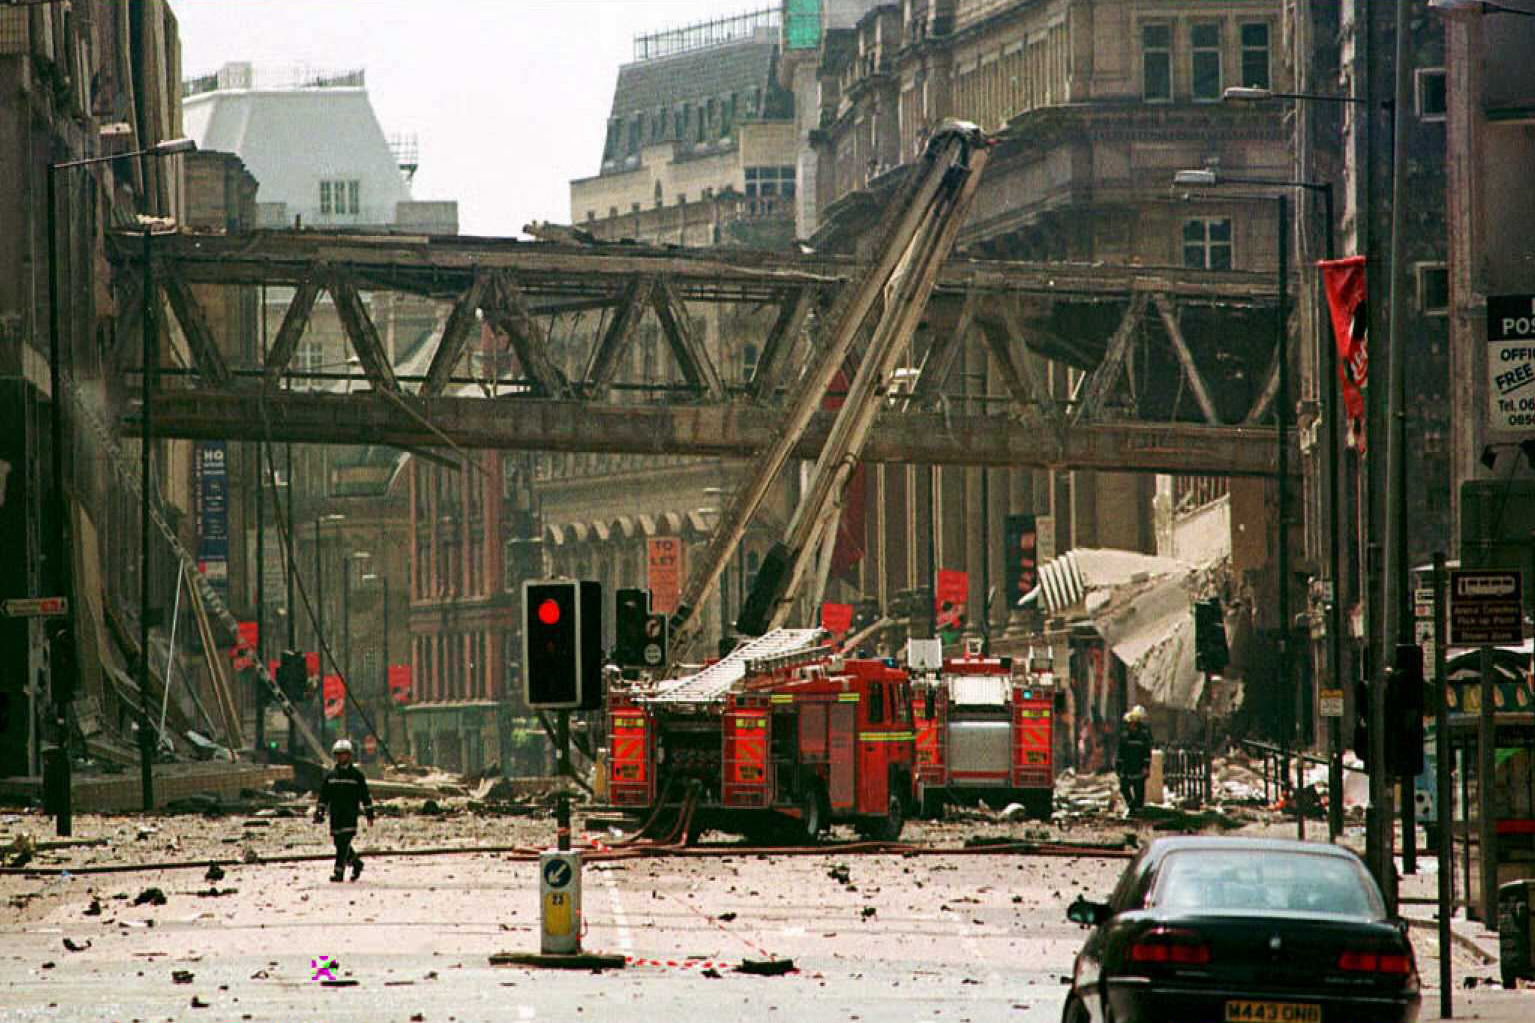 26 év után elfogtak egy férfit, akinek köze lehet az 1996-os manchesteri robbantáshoz